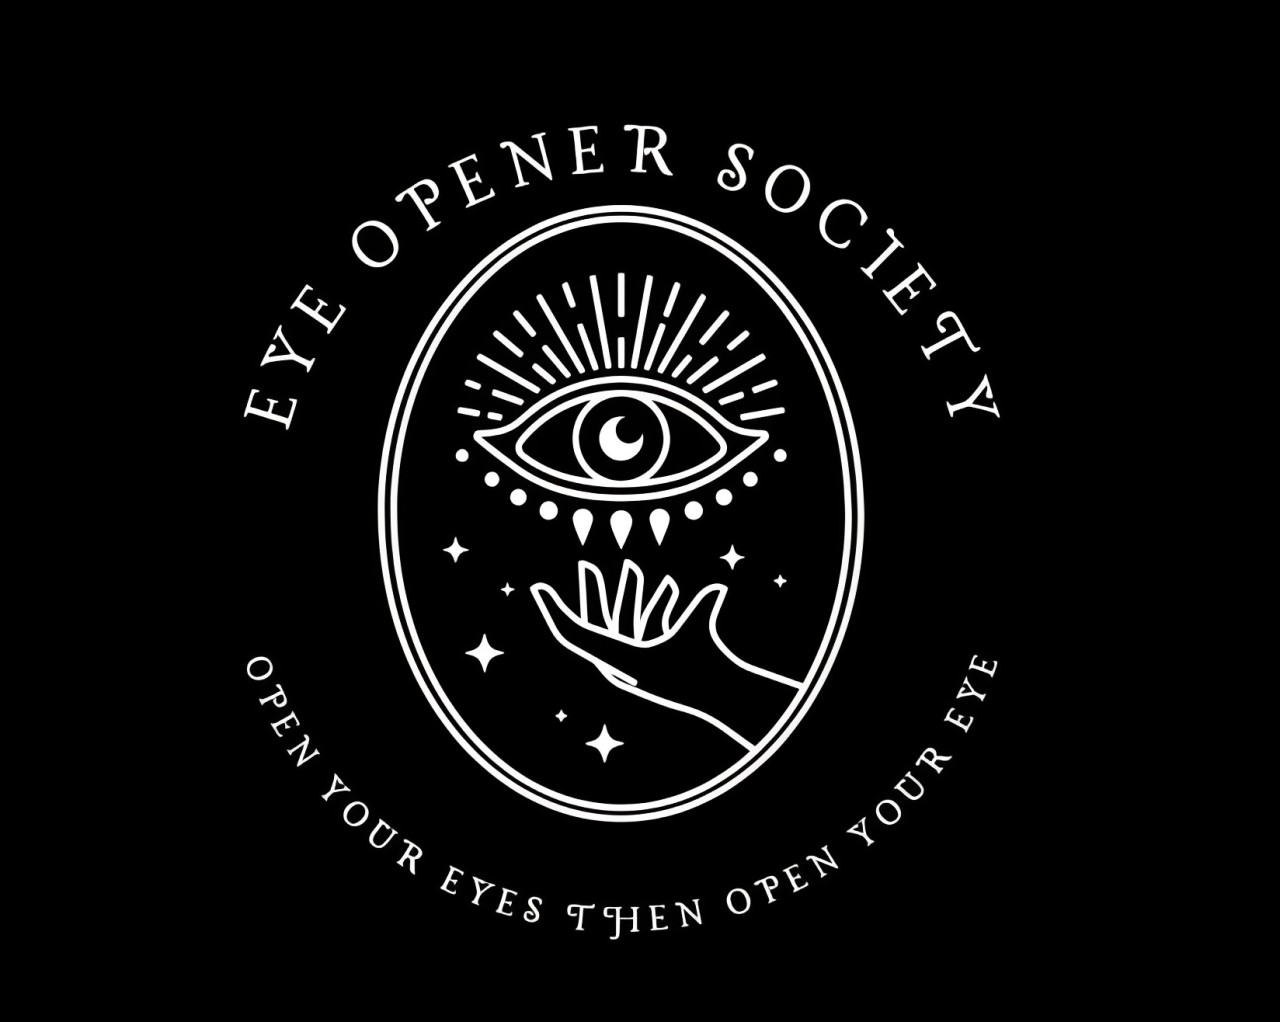 Eye Opener Society